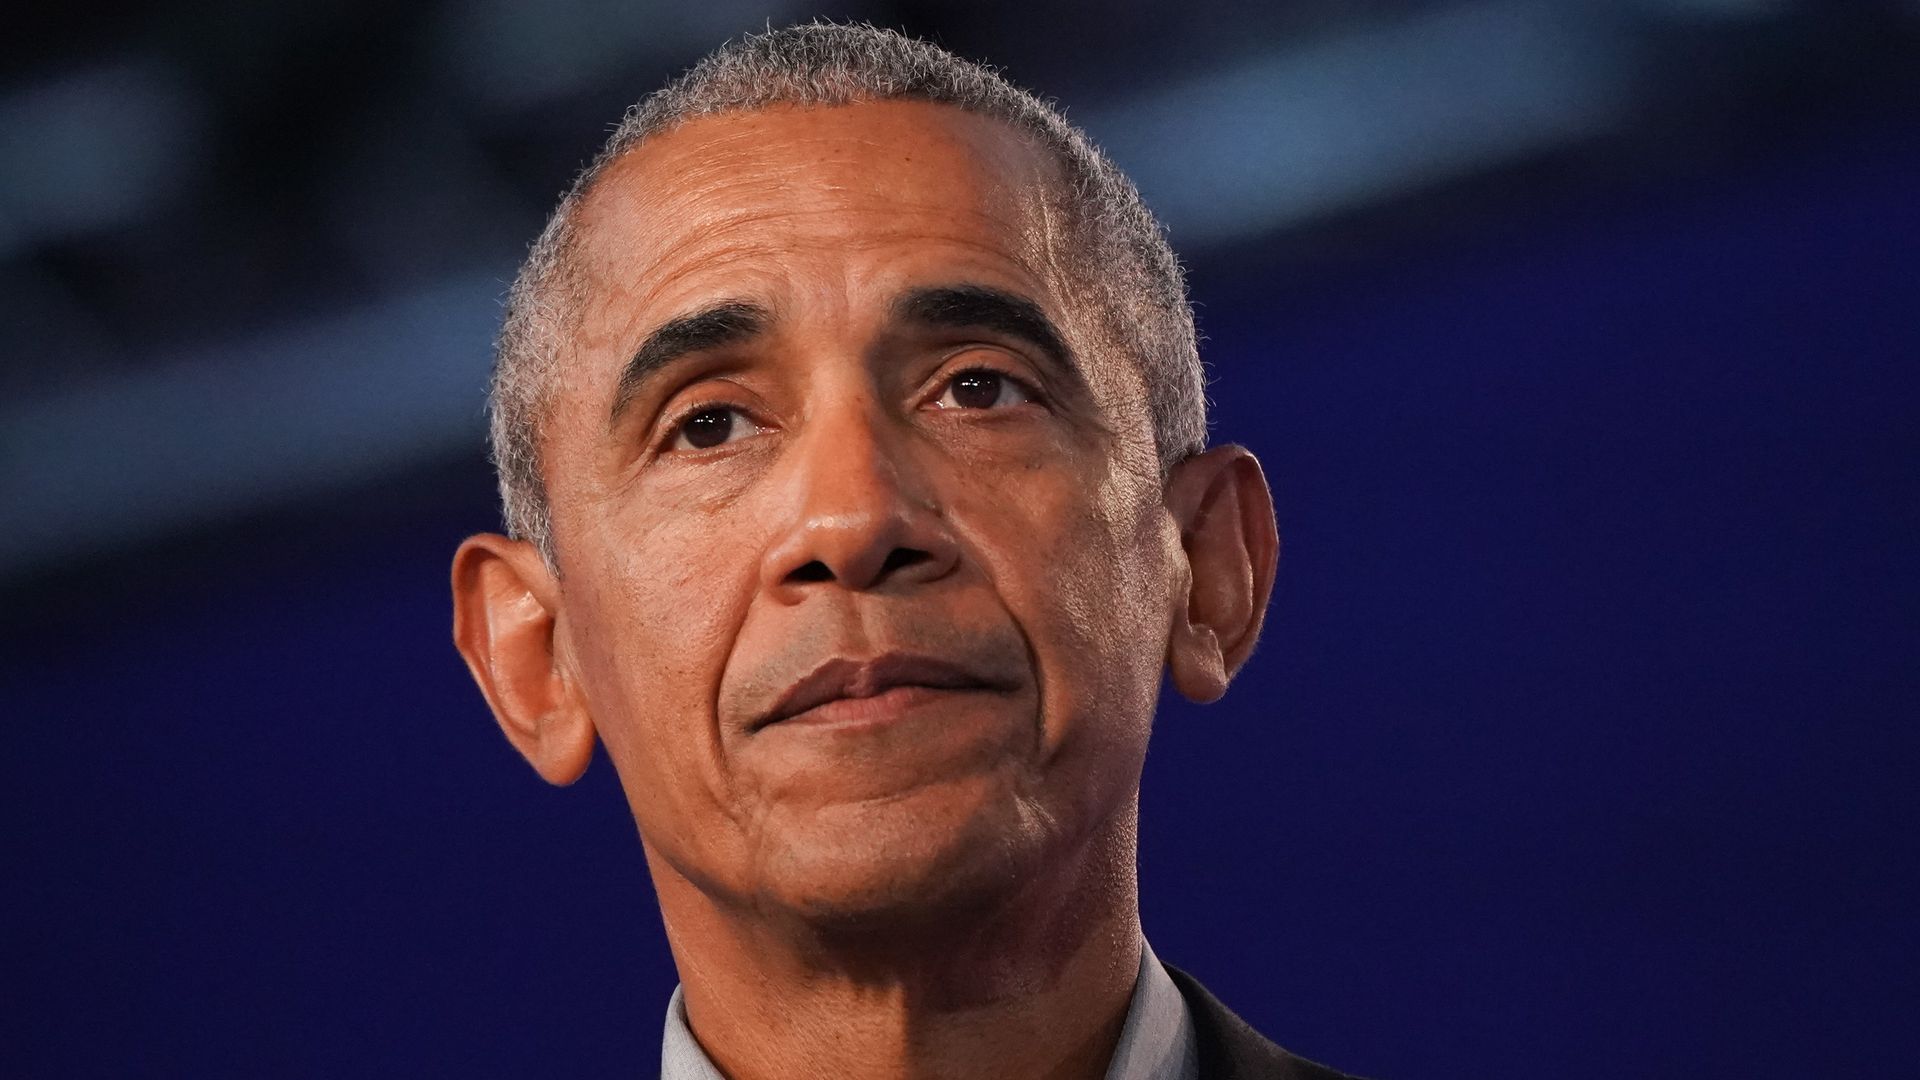 Photo of Barack Obama's face